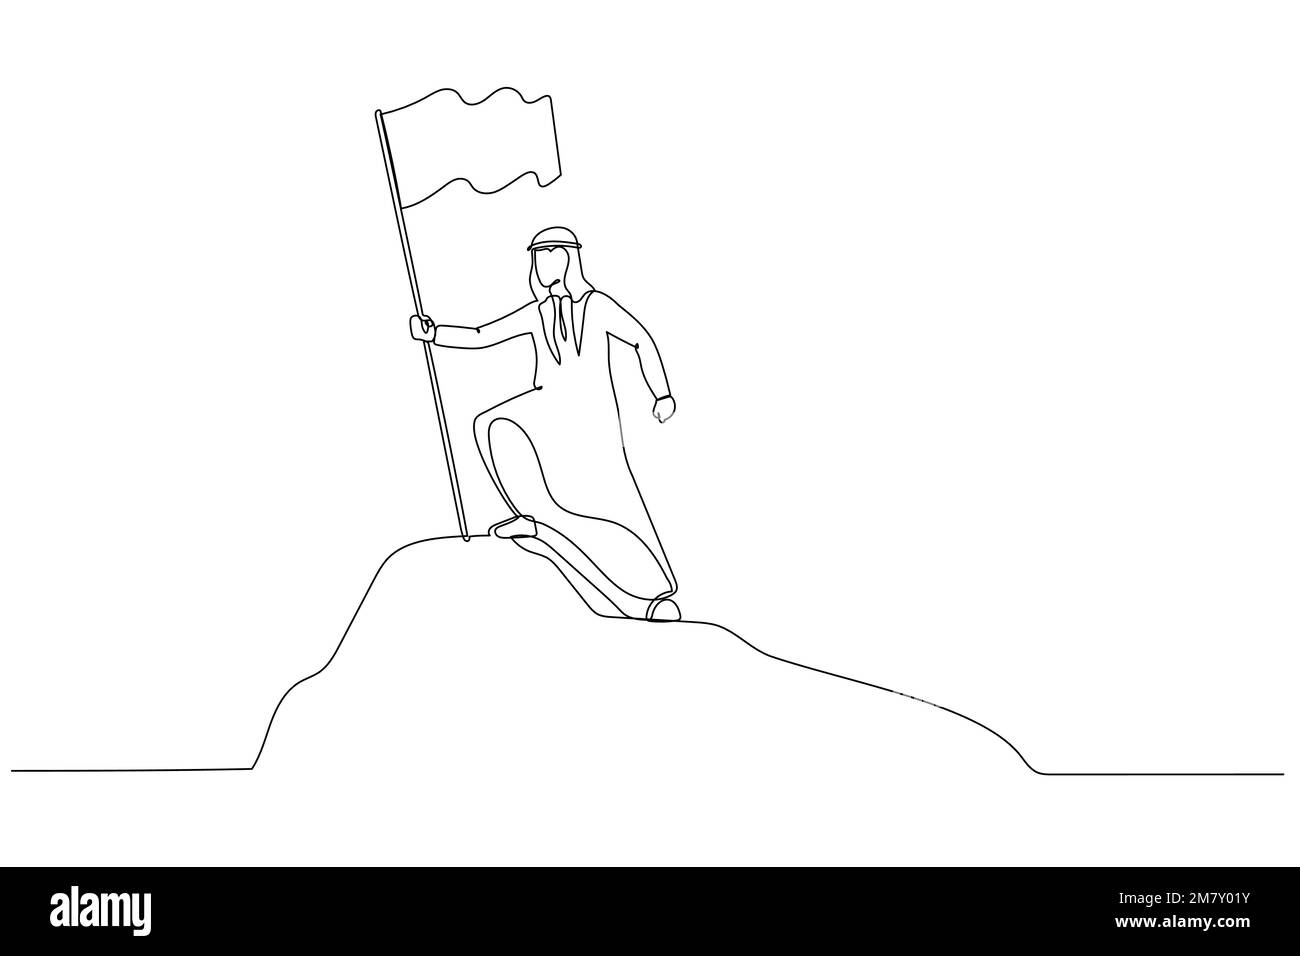 Ein Cartoon von arabischen Geschäftsleuten, der auf dem Gipfel des Berges steht und die Flagge hält wie ein Eroberer. Design im Kunststil mit einer durchgehenden Linie Stock Vektor